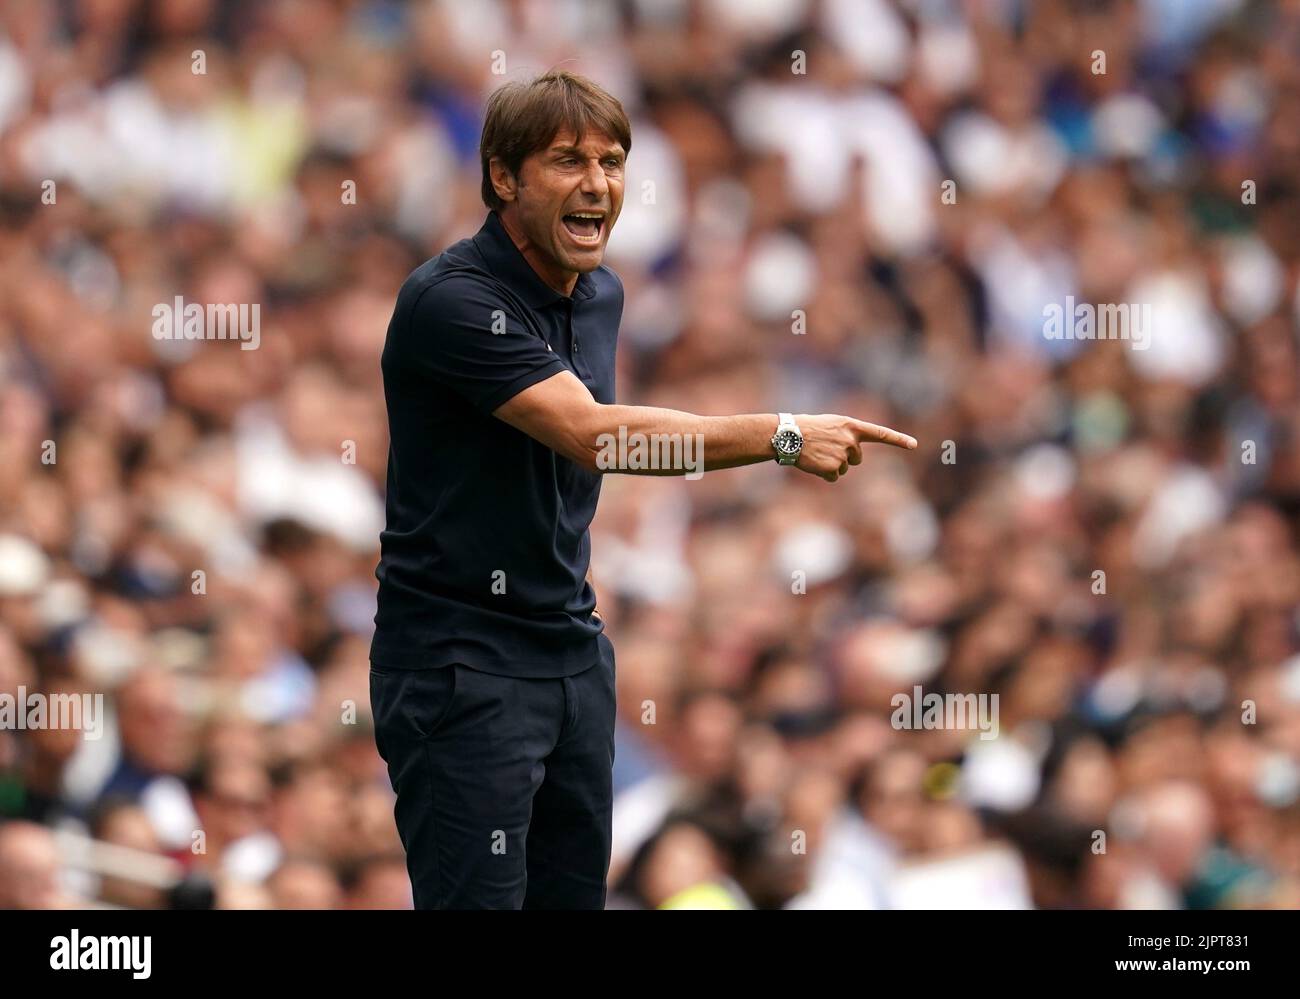 Antonio Conte, directeur de Tottenham Hotspur, lors du match de la Premier League au stade Tottenham Hotspur, Londres. Date de la photo: Samedi 20 août 2022. Banque D'Images